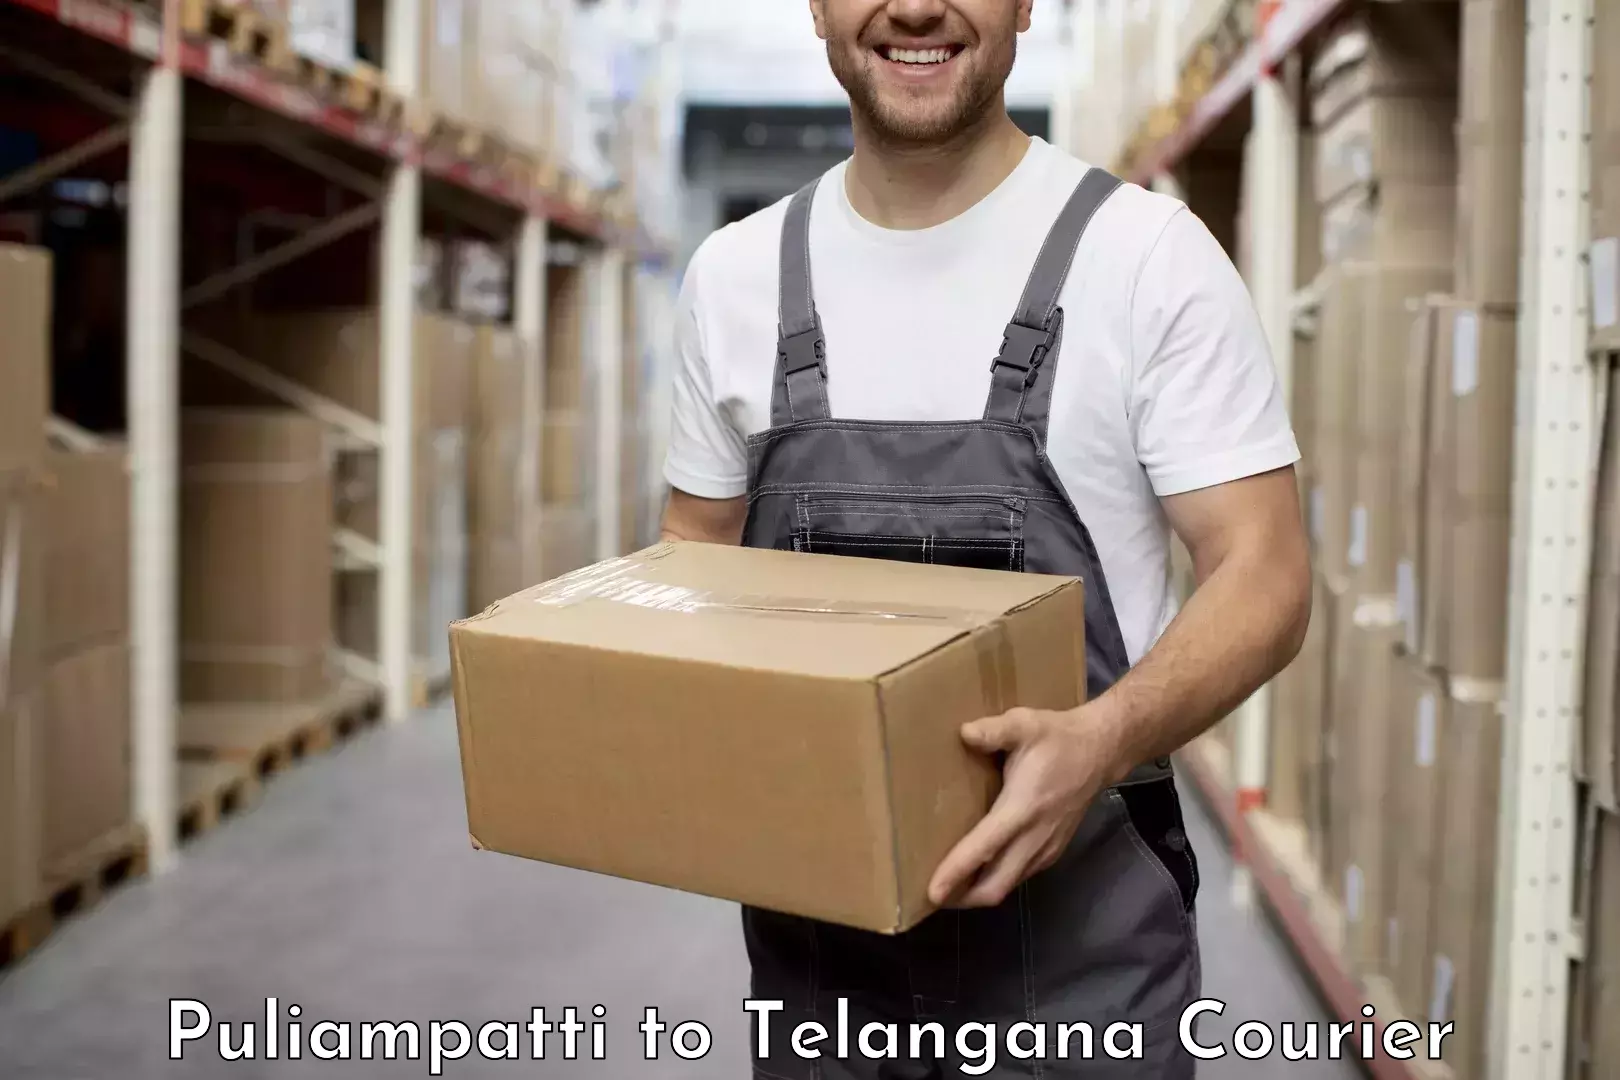 Professional courier services Puliampatti to Manuguru